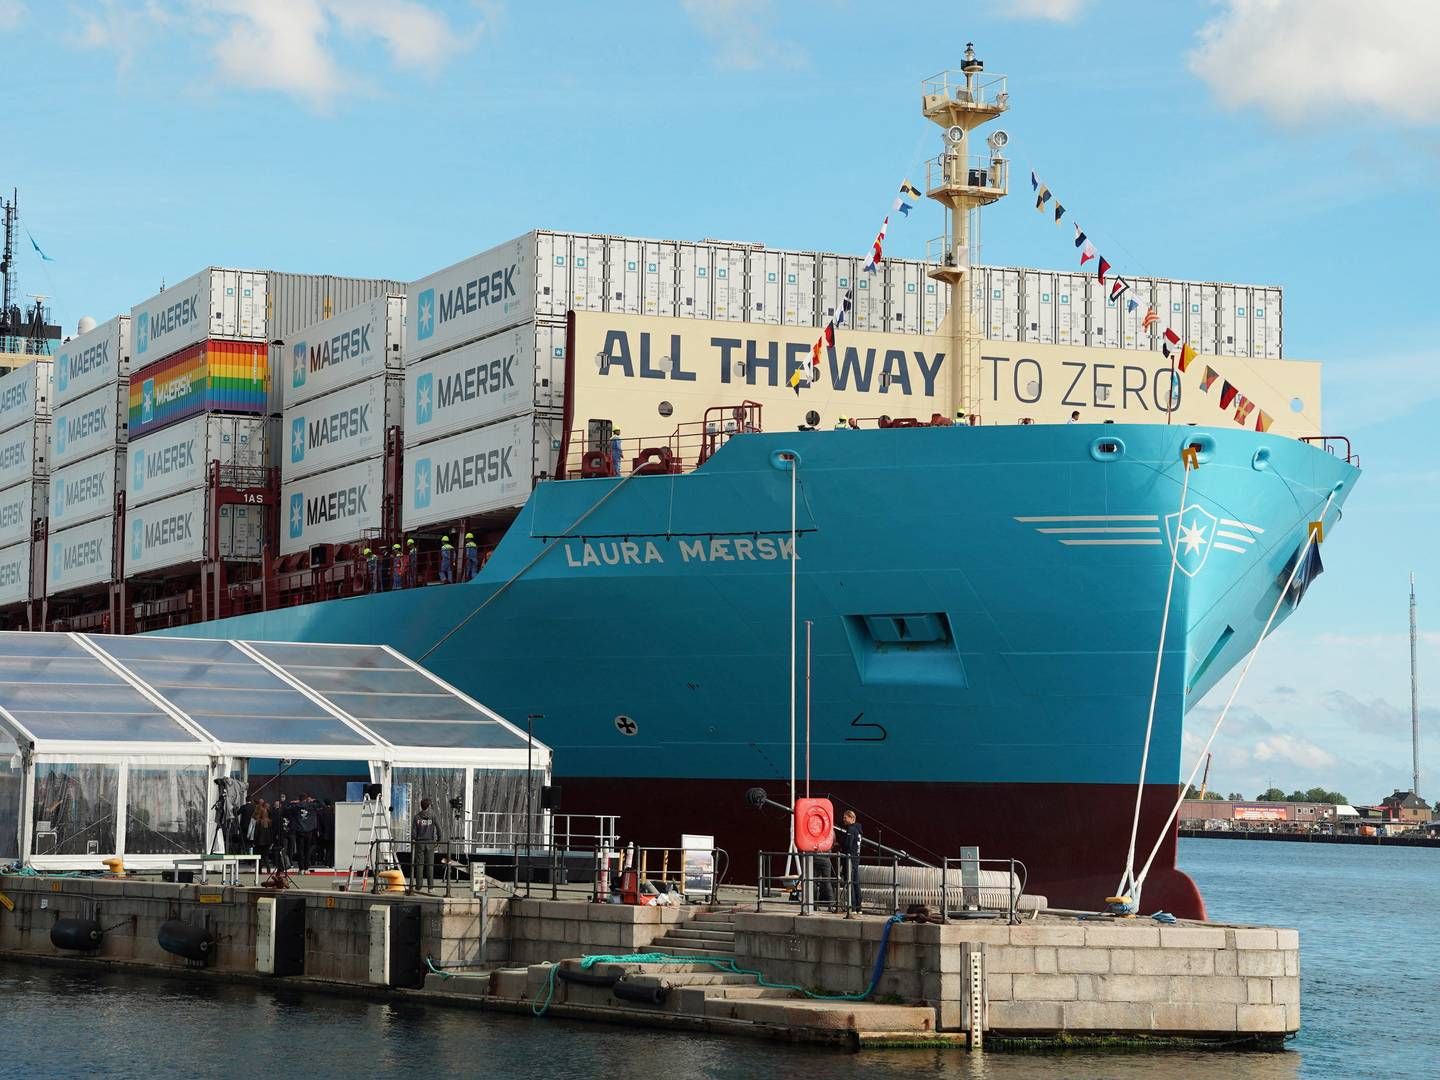 Mærsk søsatte i 2023 Laura Mærsk, der blev det først containerskib i verden til at kunne drevet af metanol. Containerskibet er bare det første af foreløbig 26 bestilte Mærsk-skibe, der kan sejle på metanol. | Photo: Tom Little/Reuters/Ritzau Scanpix